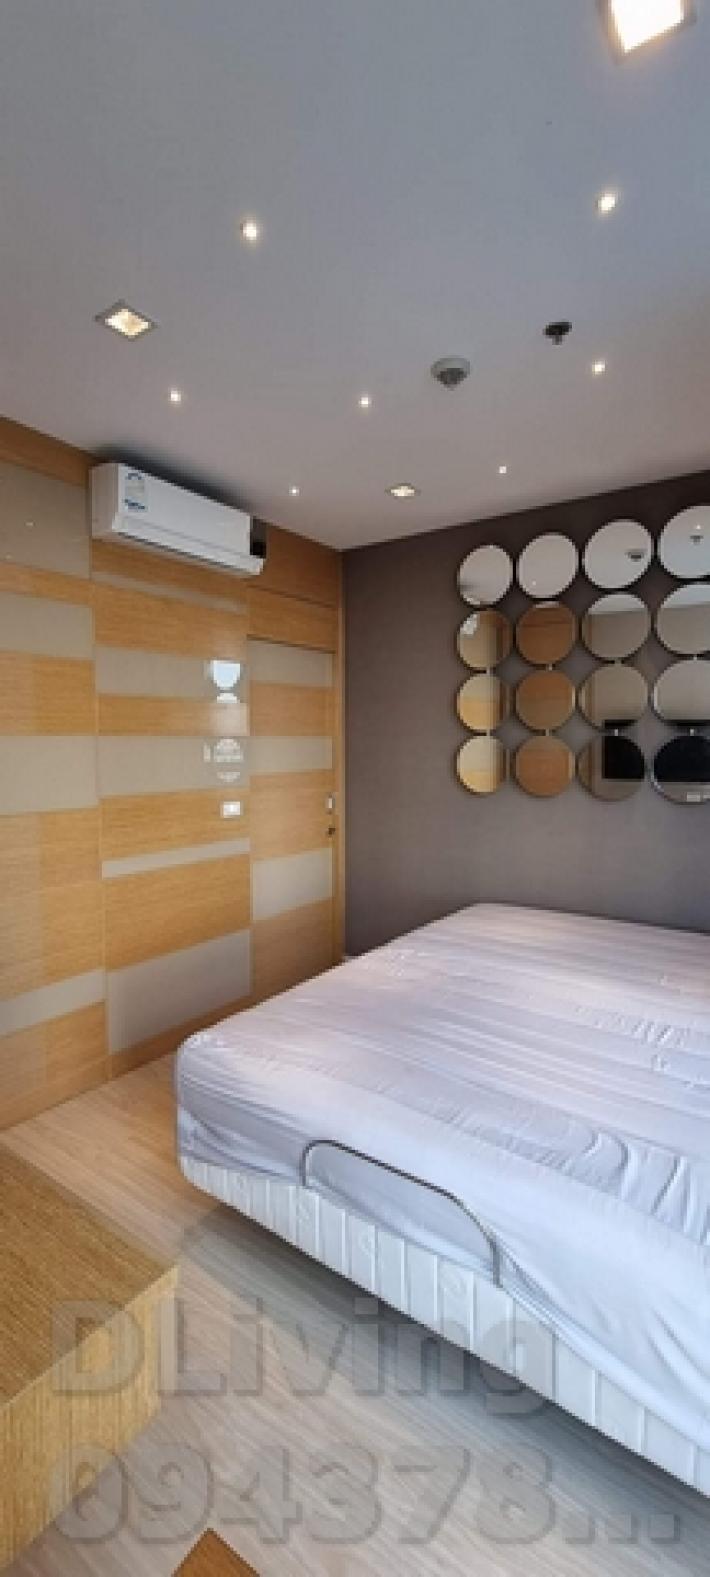 ให้เช่าห้องสวย Ideo Mobi Sathorn 2ห้องนอน1ห้องน้ำ ขนาด 42.5ตรม. ชั้นที่ 9 ห้องมุม  26.5K.บาท